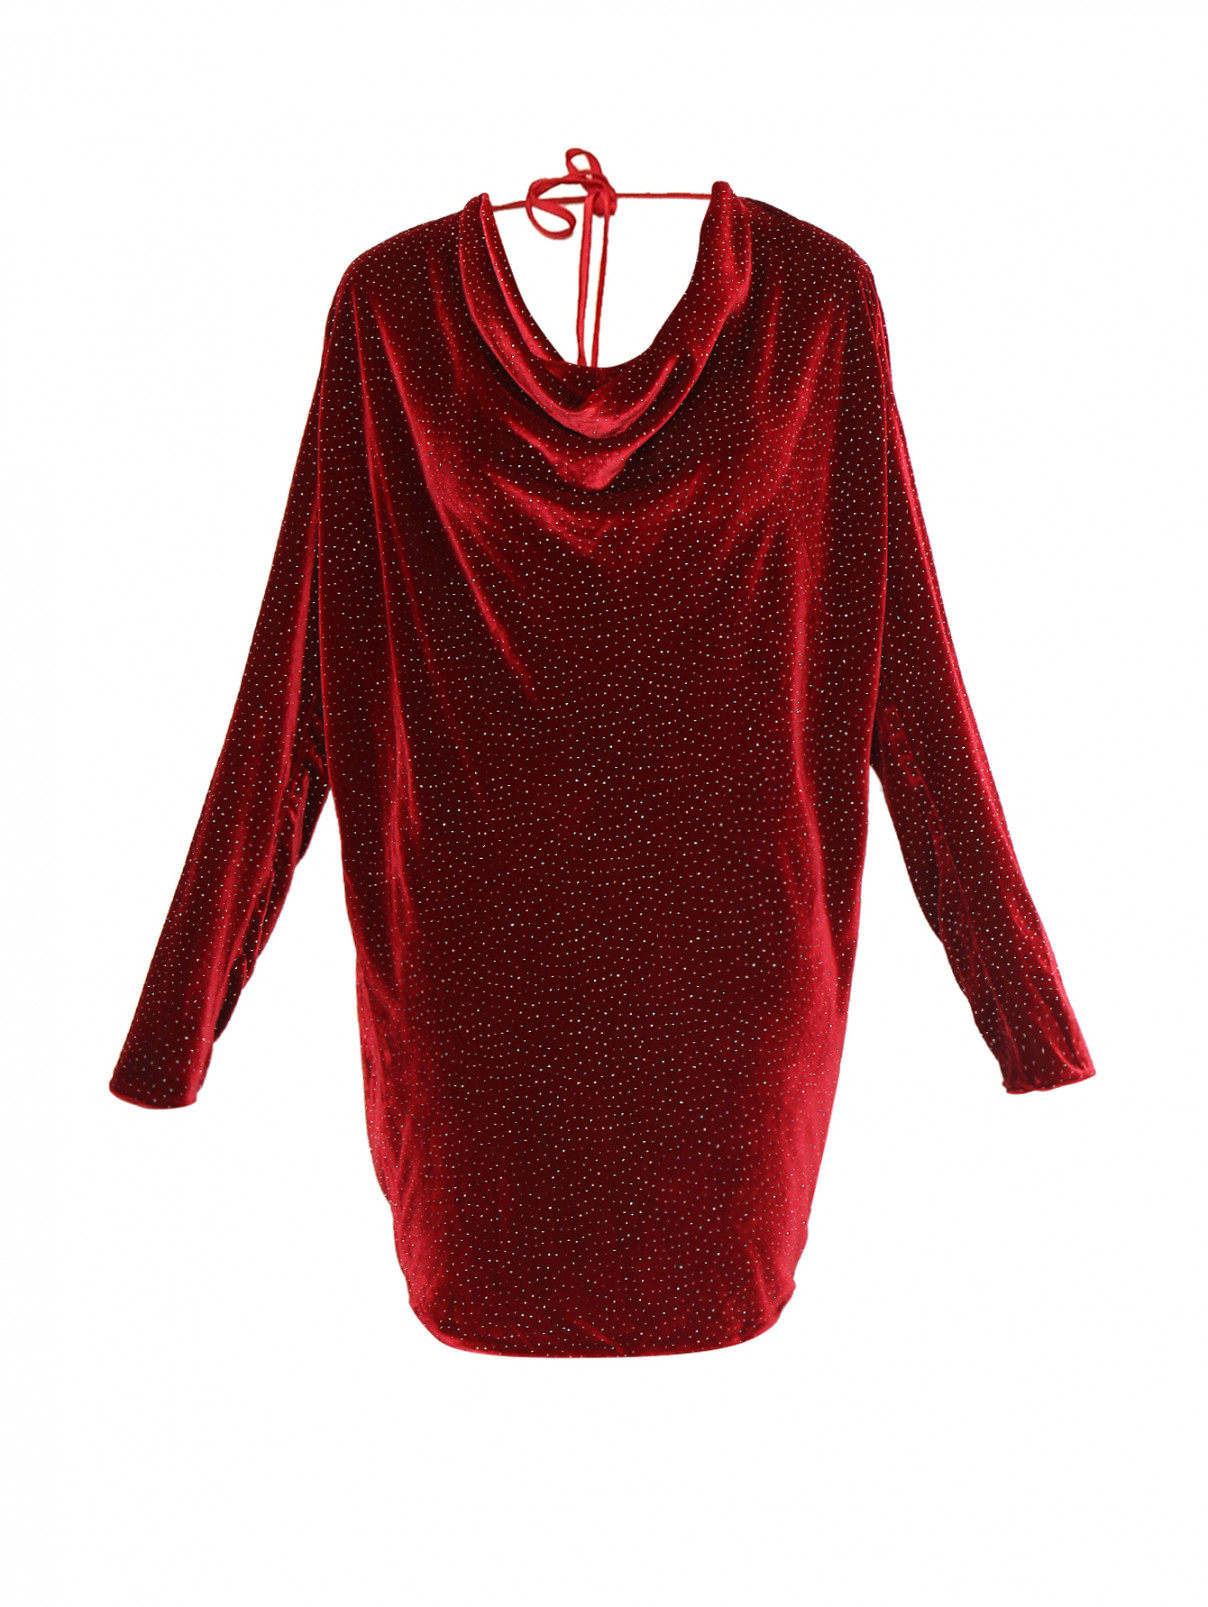 Платье шелковое декорированное стразами Rhea Costa  –  Общий вид  – Цвет:  Красный